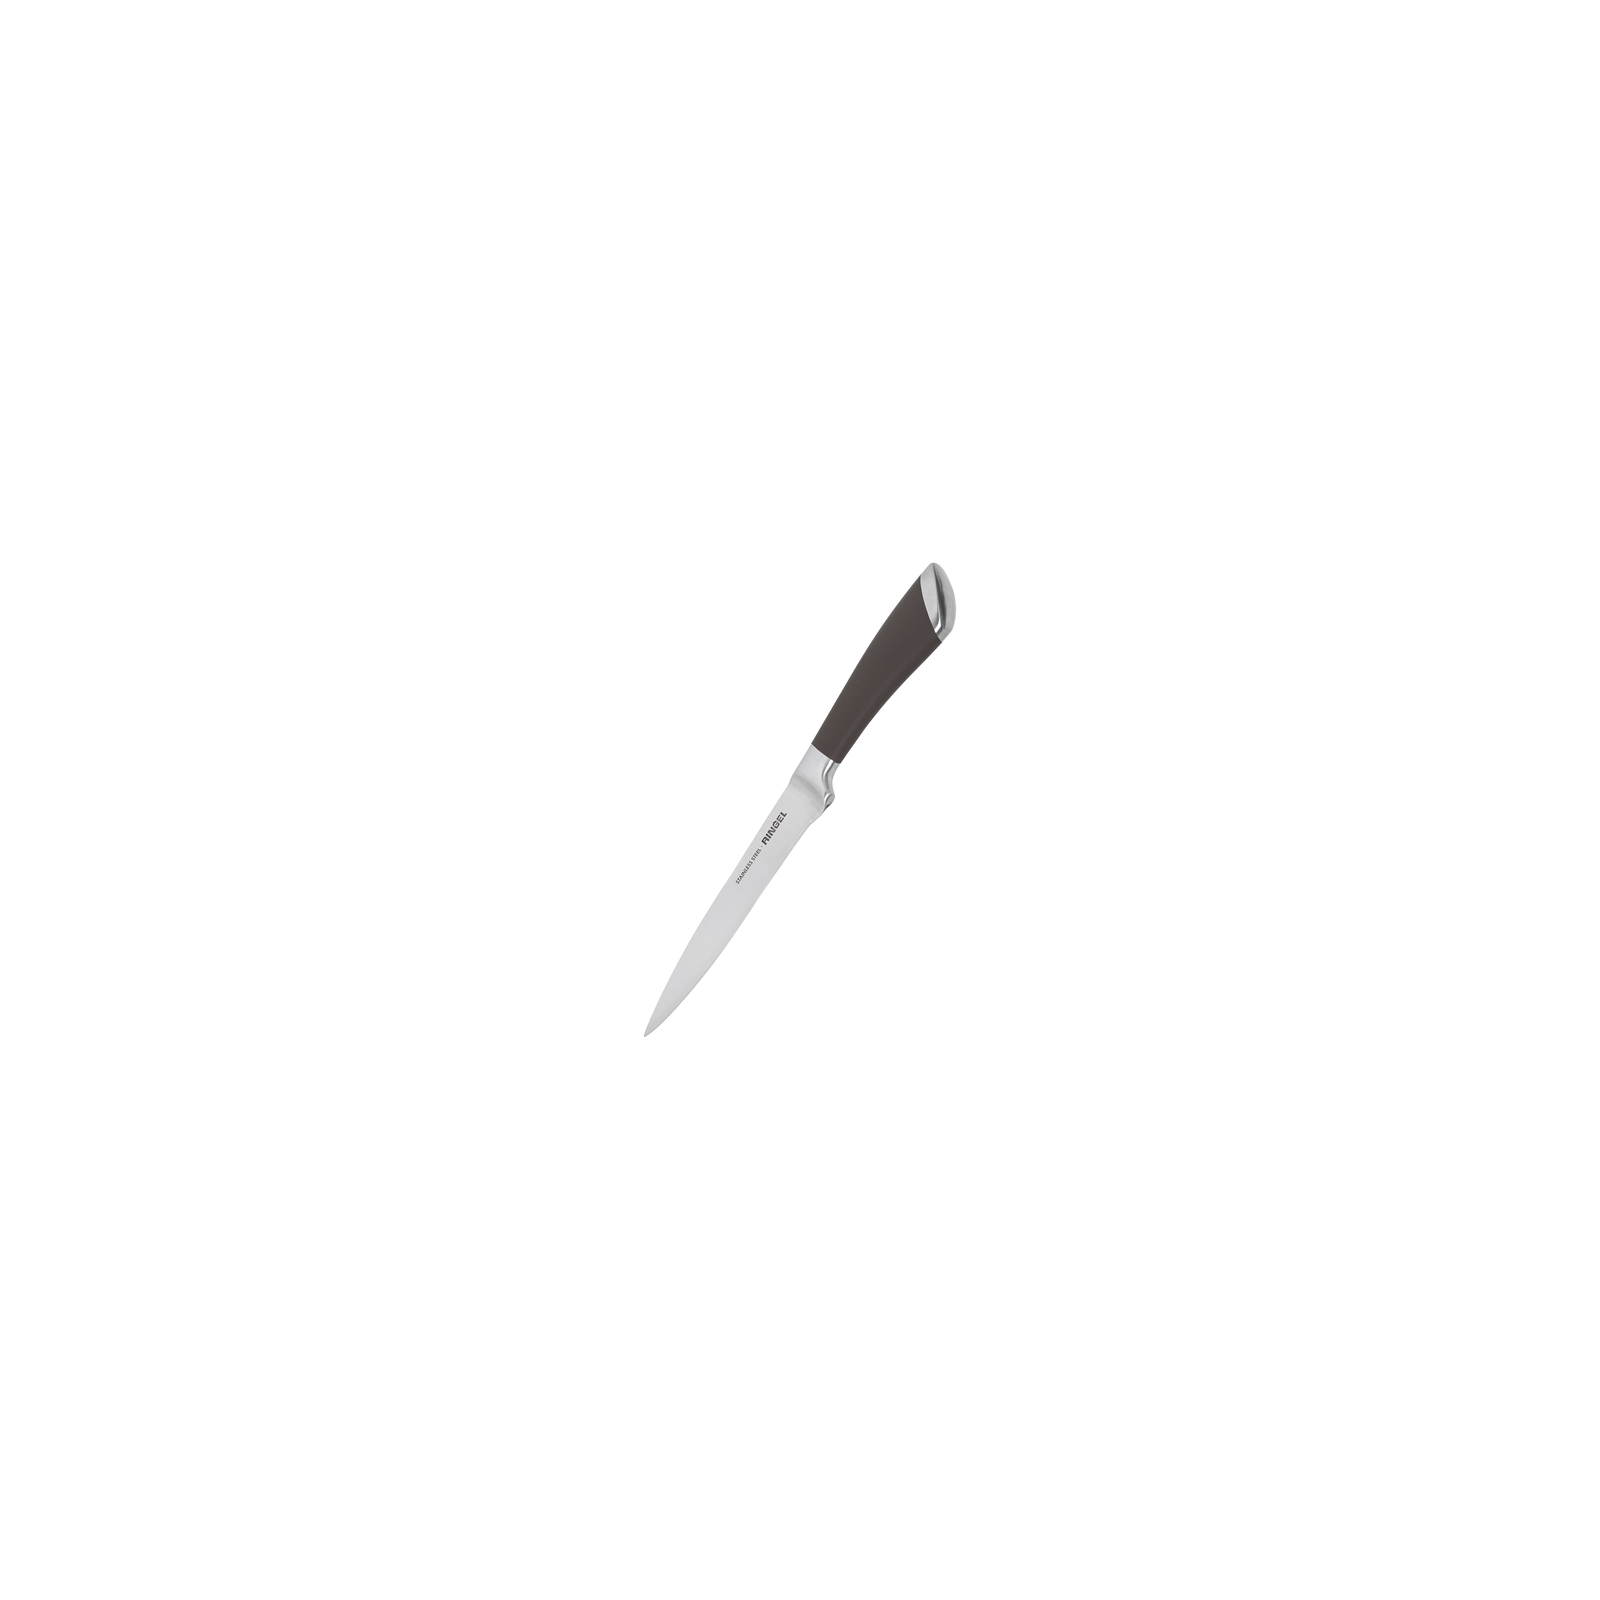 Кухонный нож Ringel Exzellent универсальный 12 см (RG-11000-2)